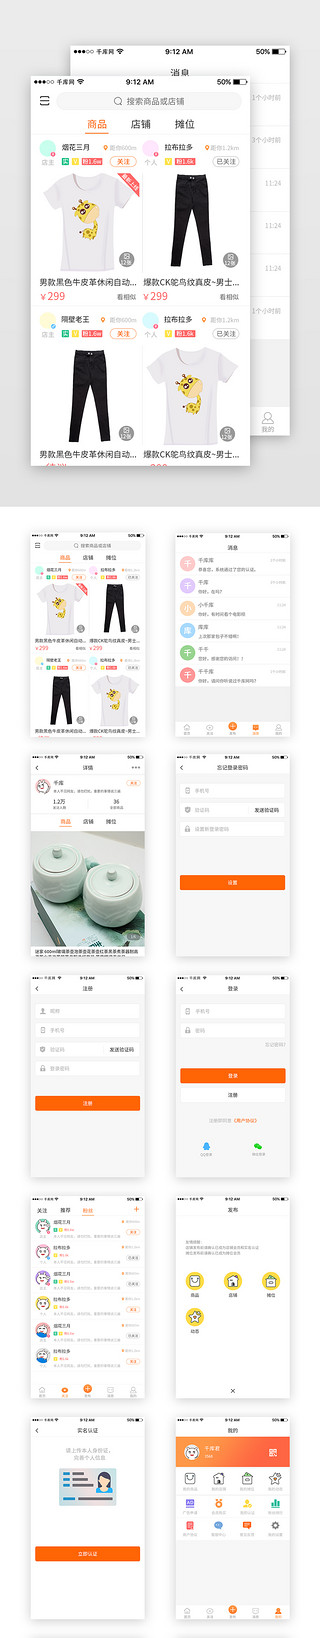 社交首页UI设计素材_橙色二手在线商城App套图